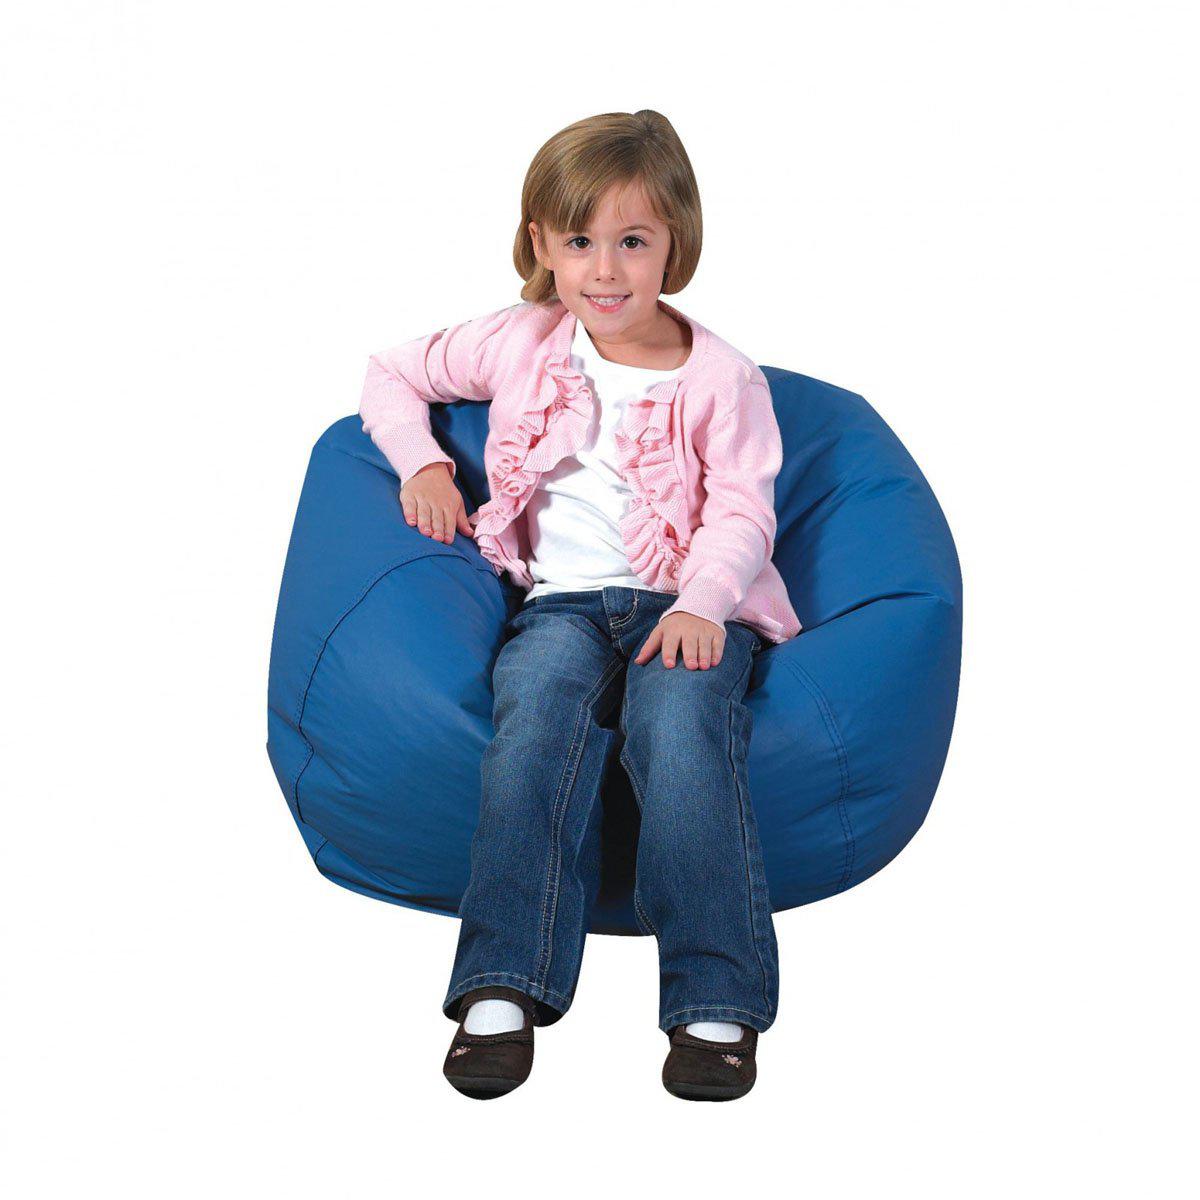 Bean Bag Chair Refill Beads - 2 Cubic Feet - NextGen Furniture, Inc.